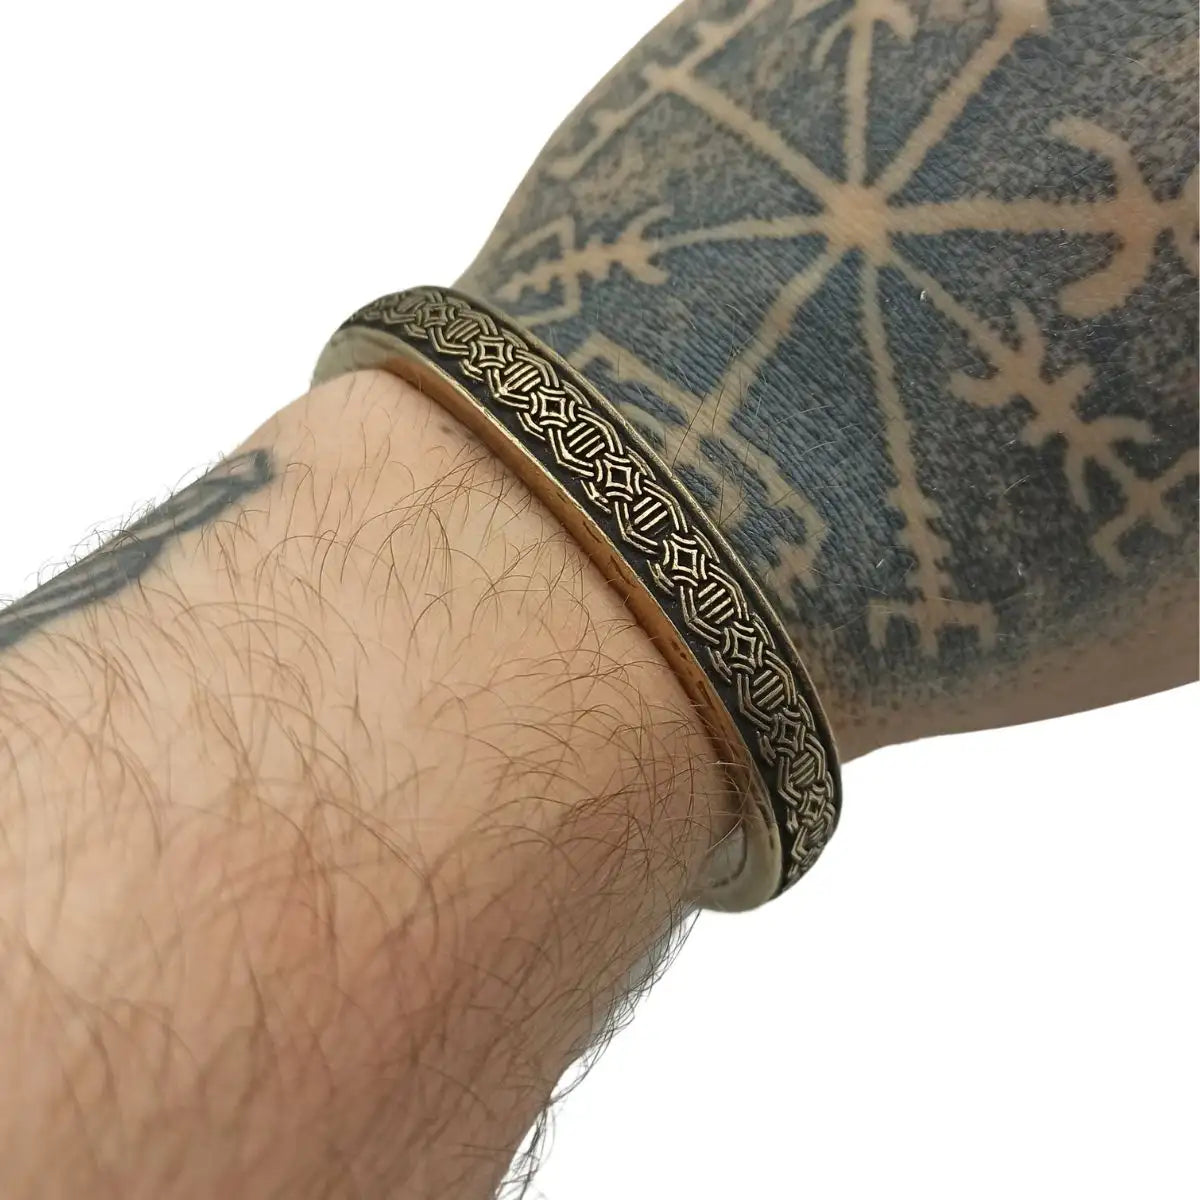 Runic Armband Temporary Tattoo – TattooIcon